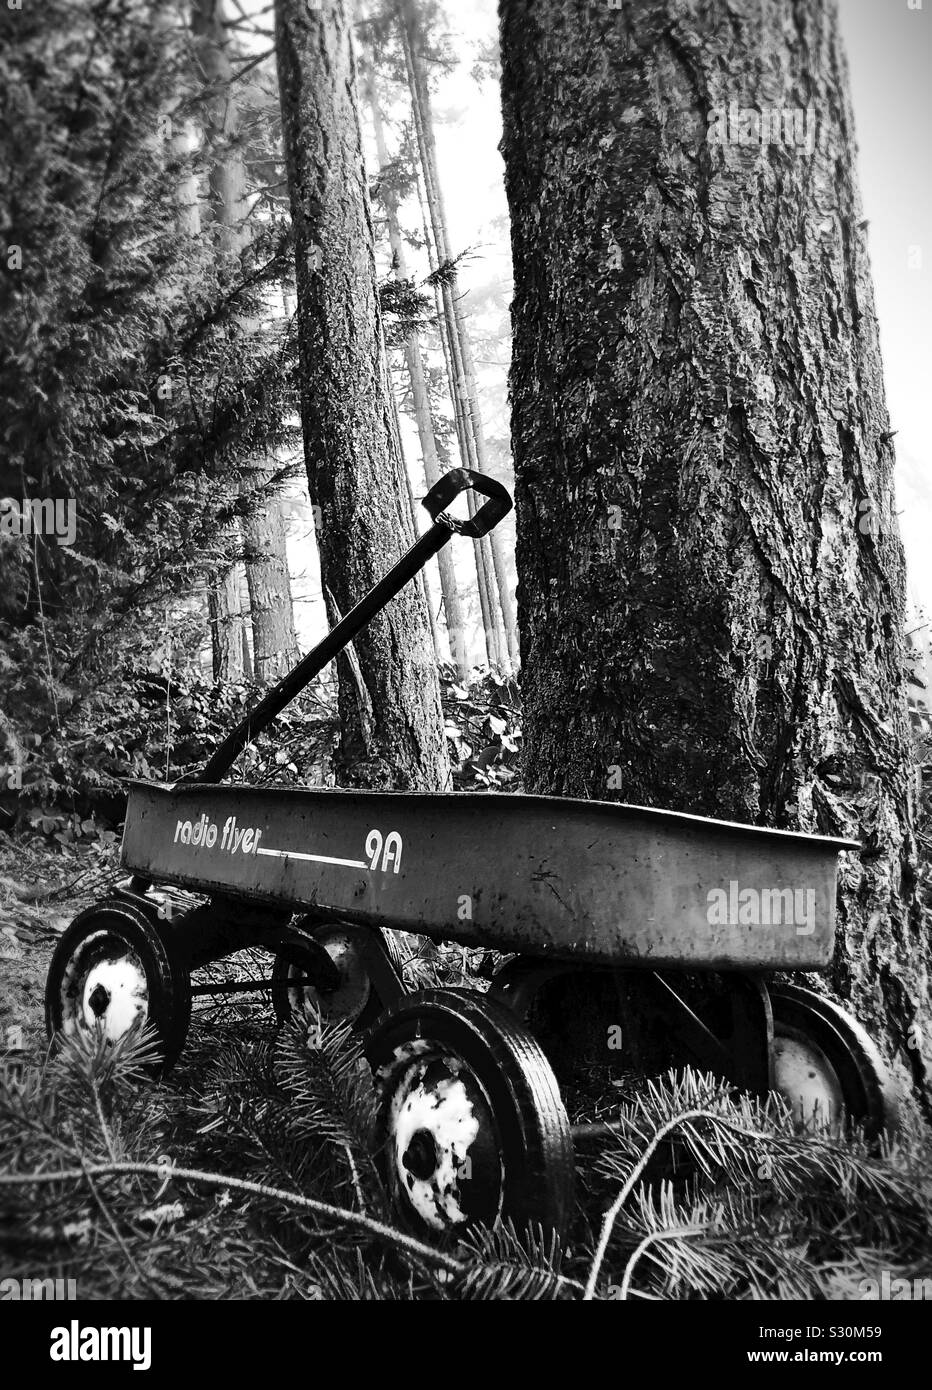 Ein altes Radio Flyer Wagen neben einem Baum in einem Wald. Stockfoto